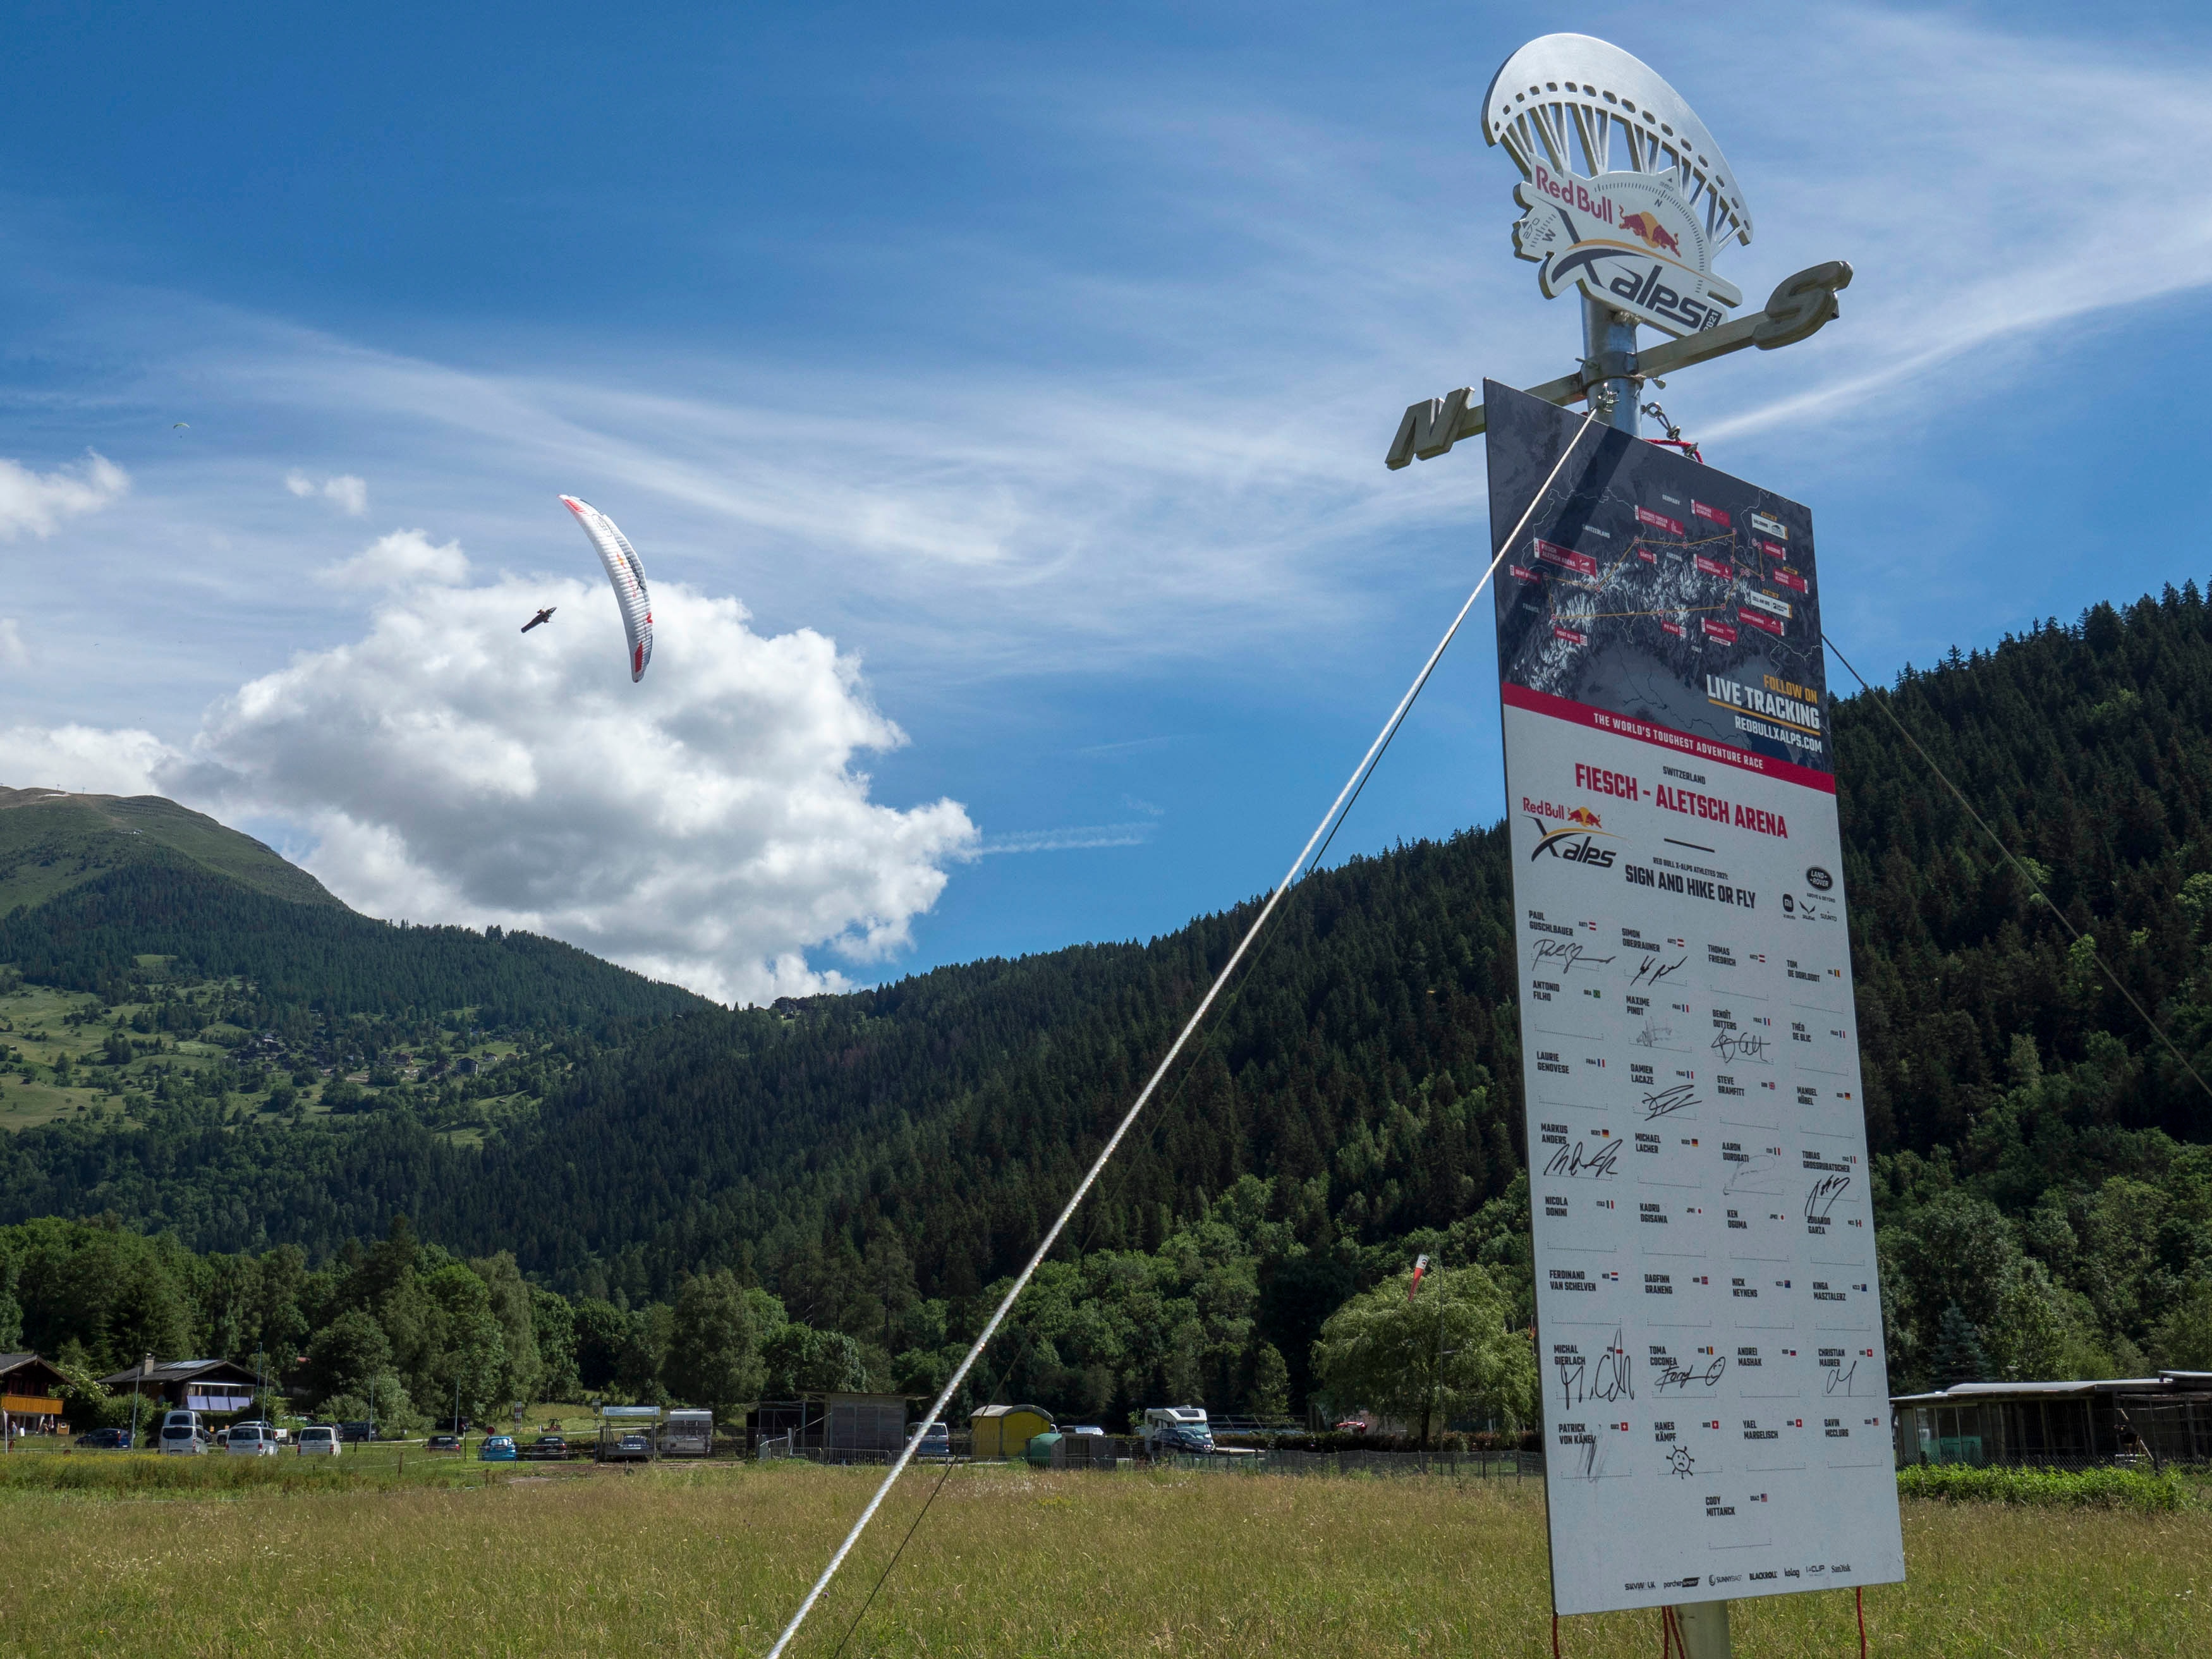 Ferdinand van Schelven (NDL) performs during the Red Bull X-Alps 2021 in Fiesch, Switzerland on June 26, 2021